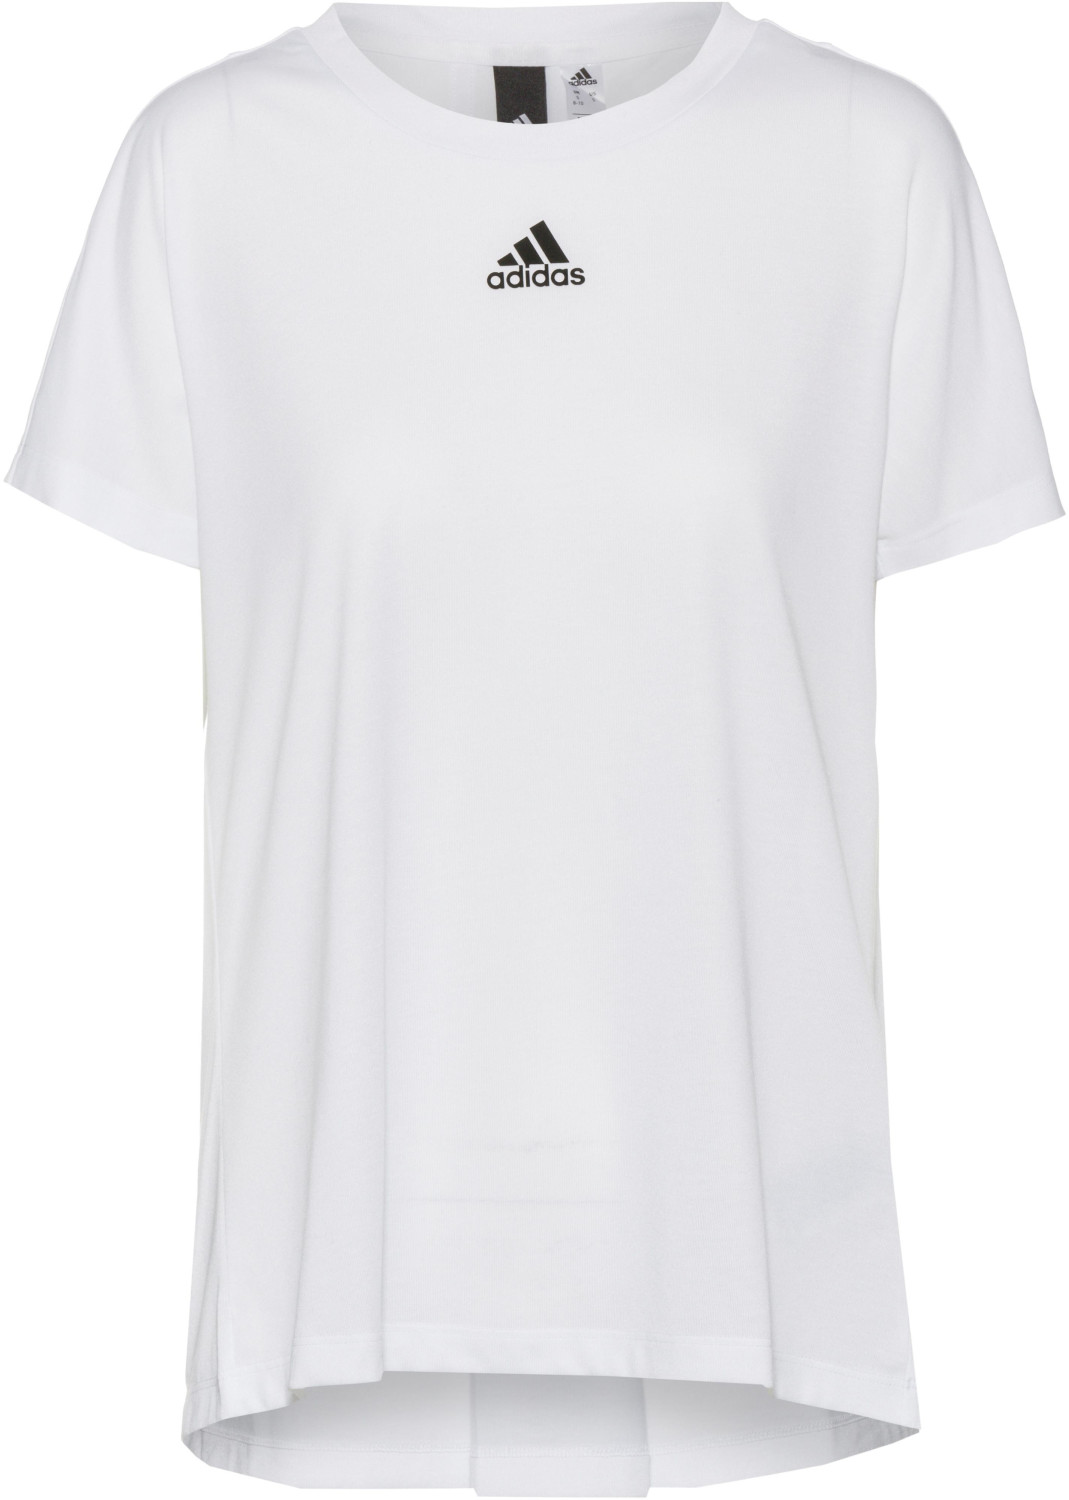 Adidas (FL1829) white